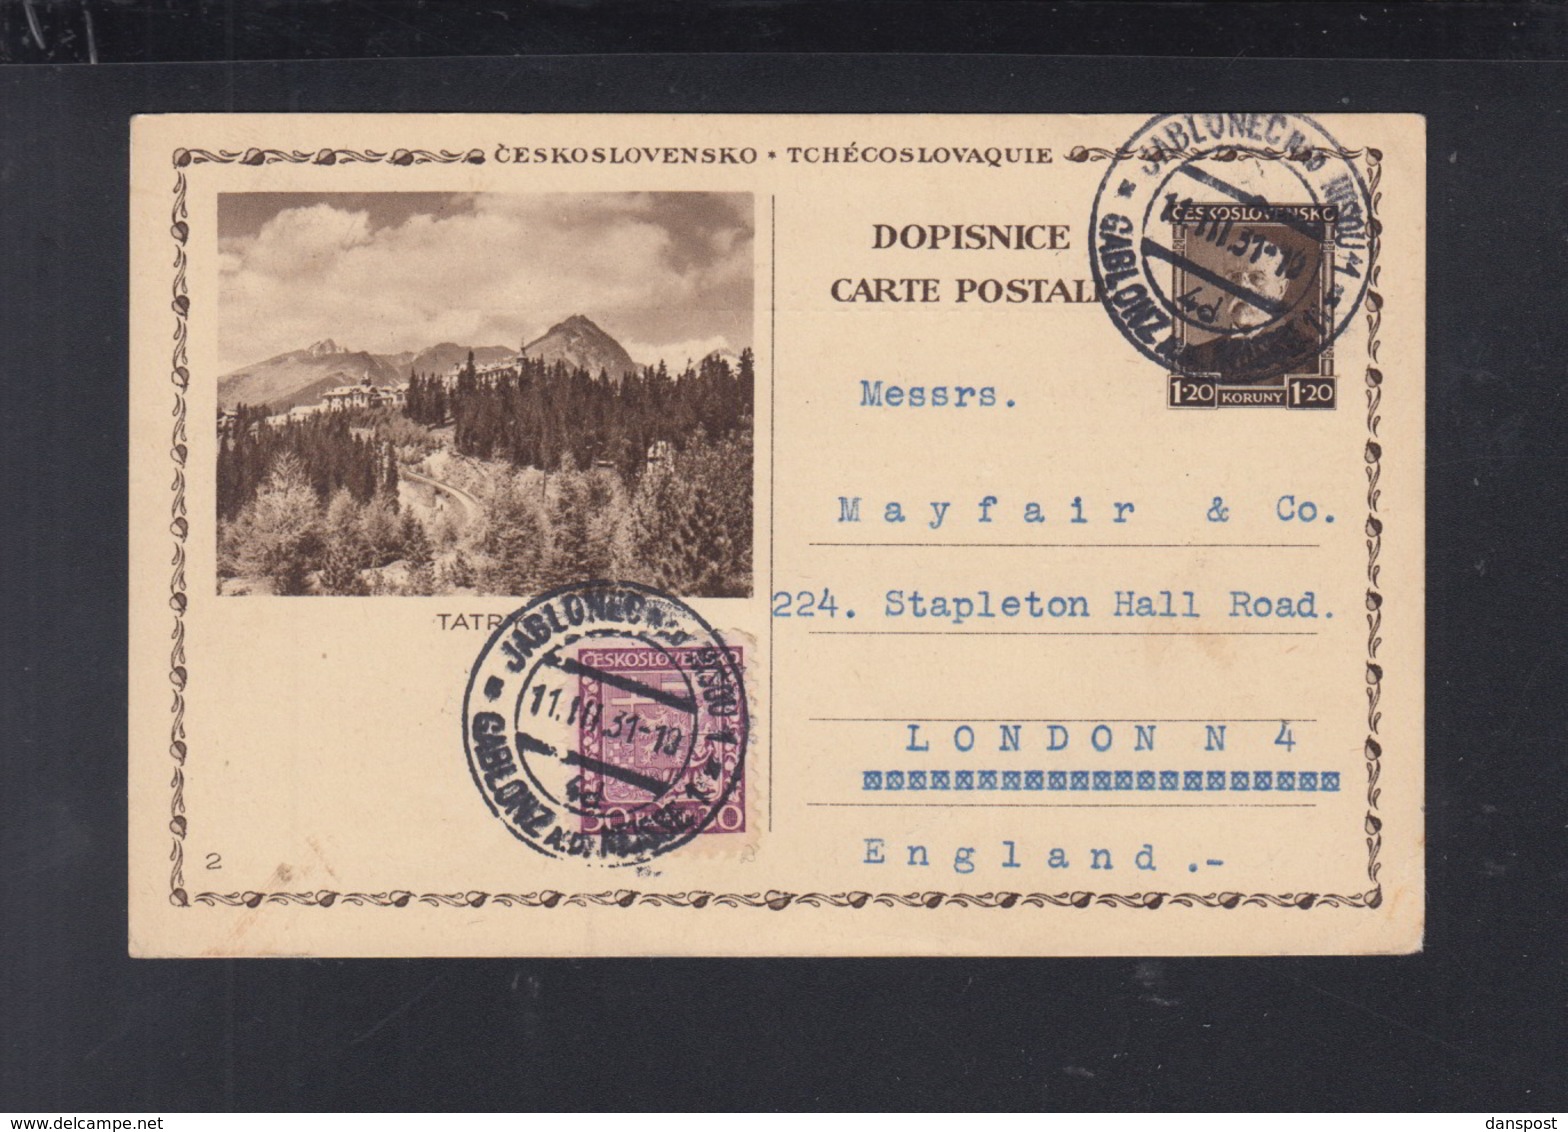 Czechoslovakia Stationery Tatra 1931 To London - Postcards